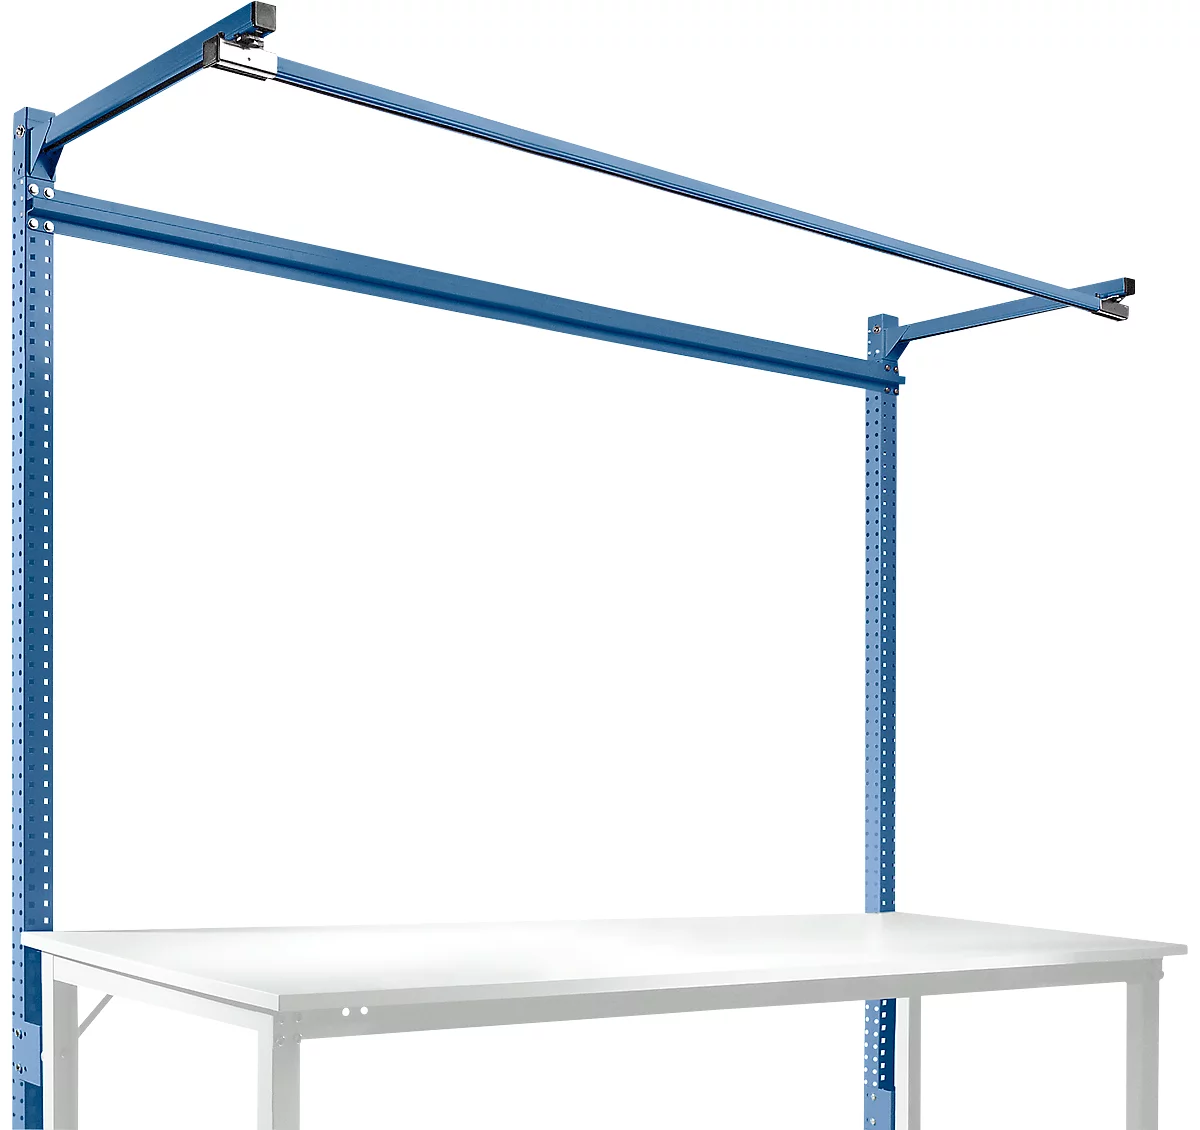 Estructura pórtica adicional con brazo saliente, Mesa básica SPEZIAL mesa de trabajo/banco de trabajo UNIVERSAL/PROFI, 2000 mm, azul brillante